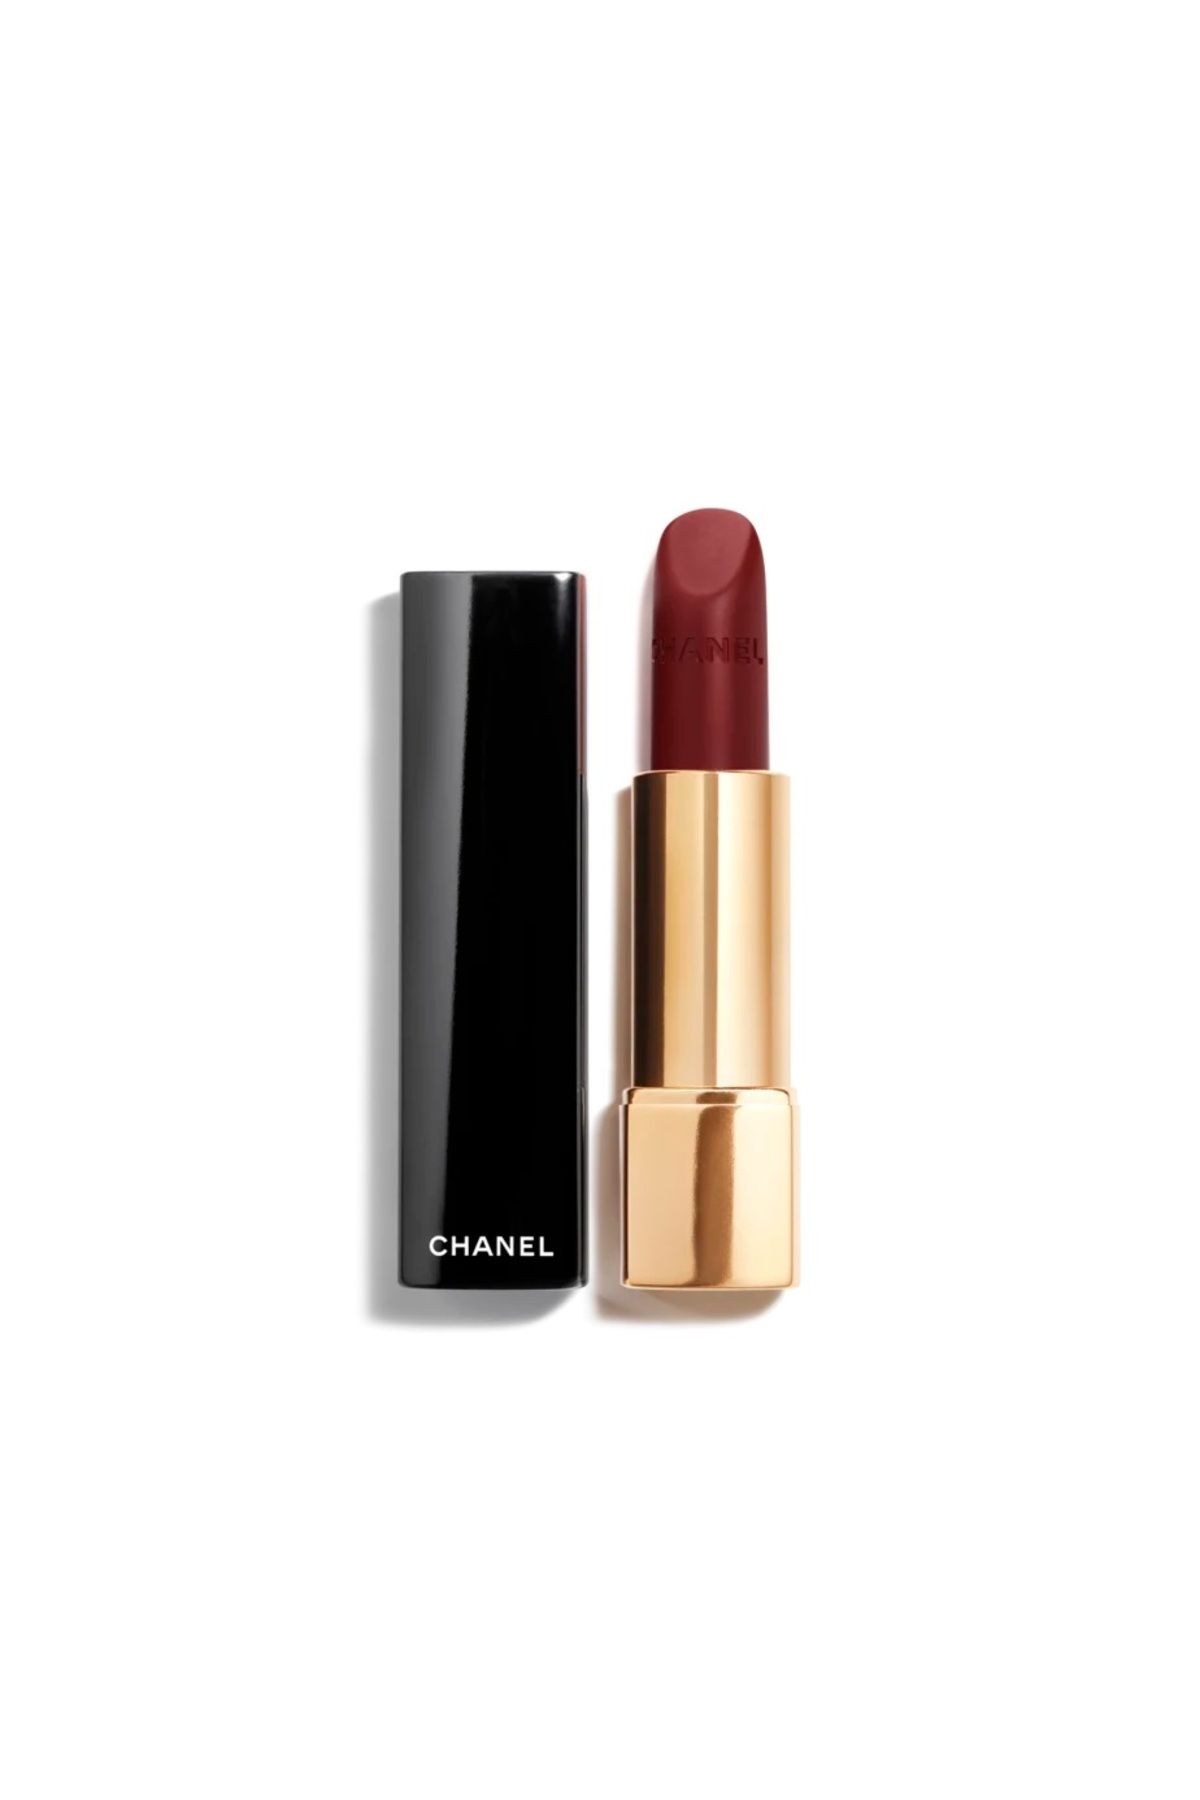 Chanel ROUGE ALLURE VELVET-Nemlendirici Uzun Süre Kalıcı Yoğun Pigmentli Işıltılı Mat Ruj 3.5G